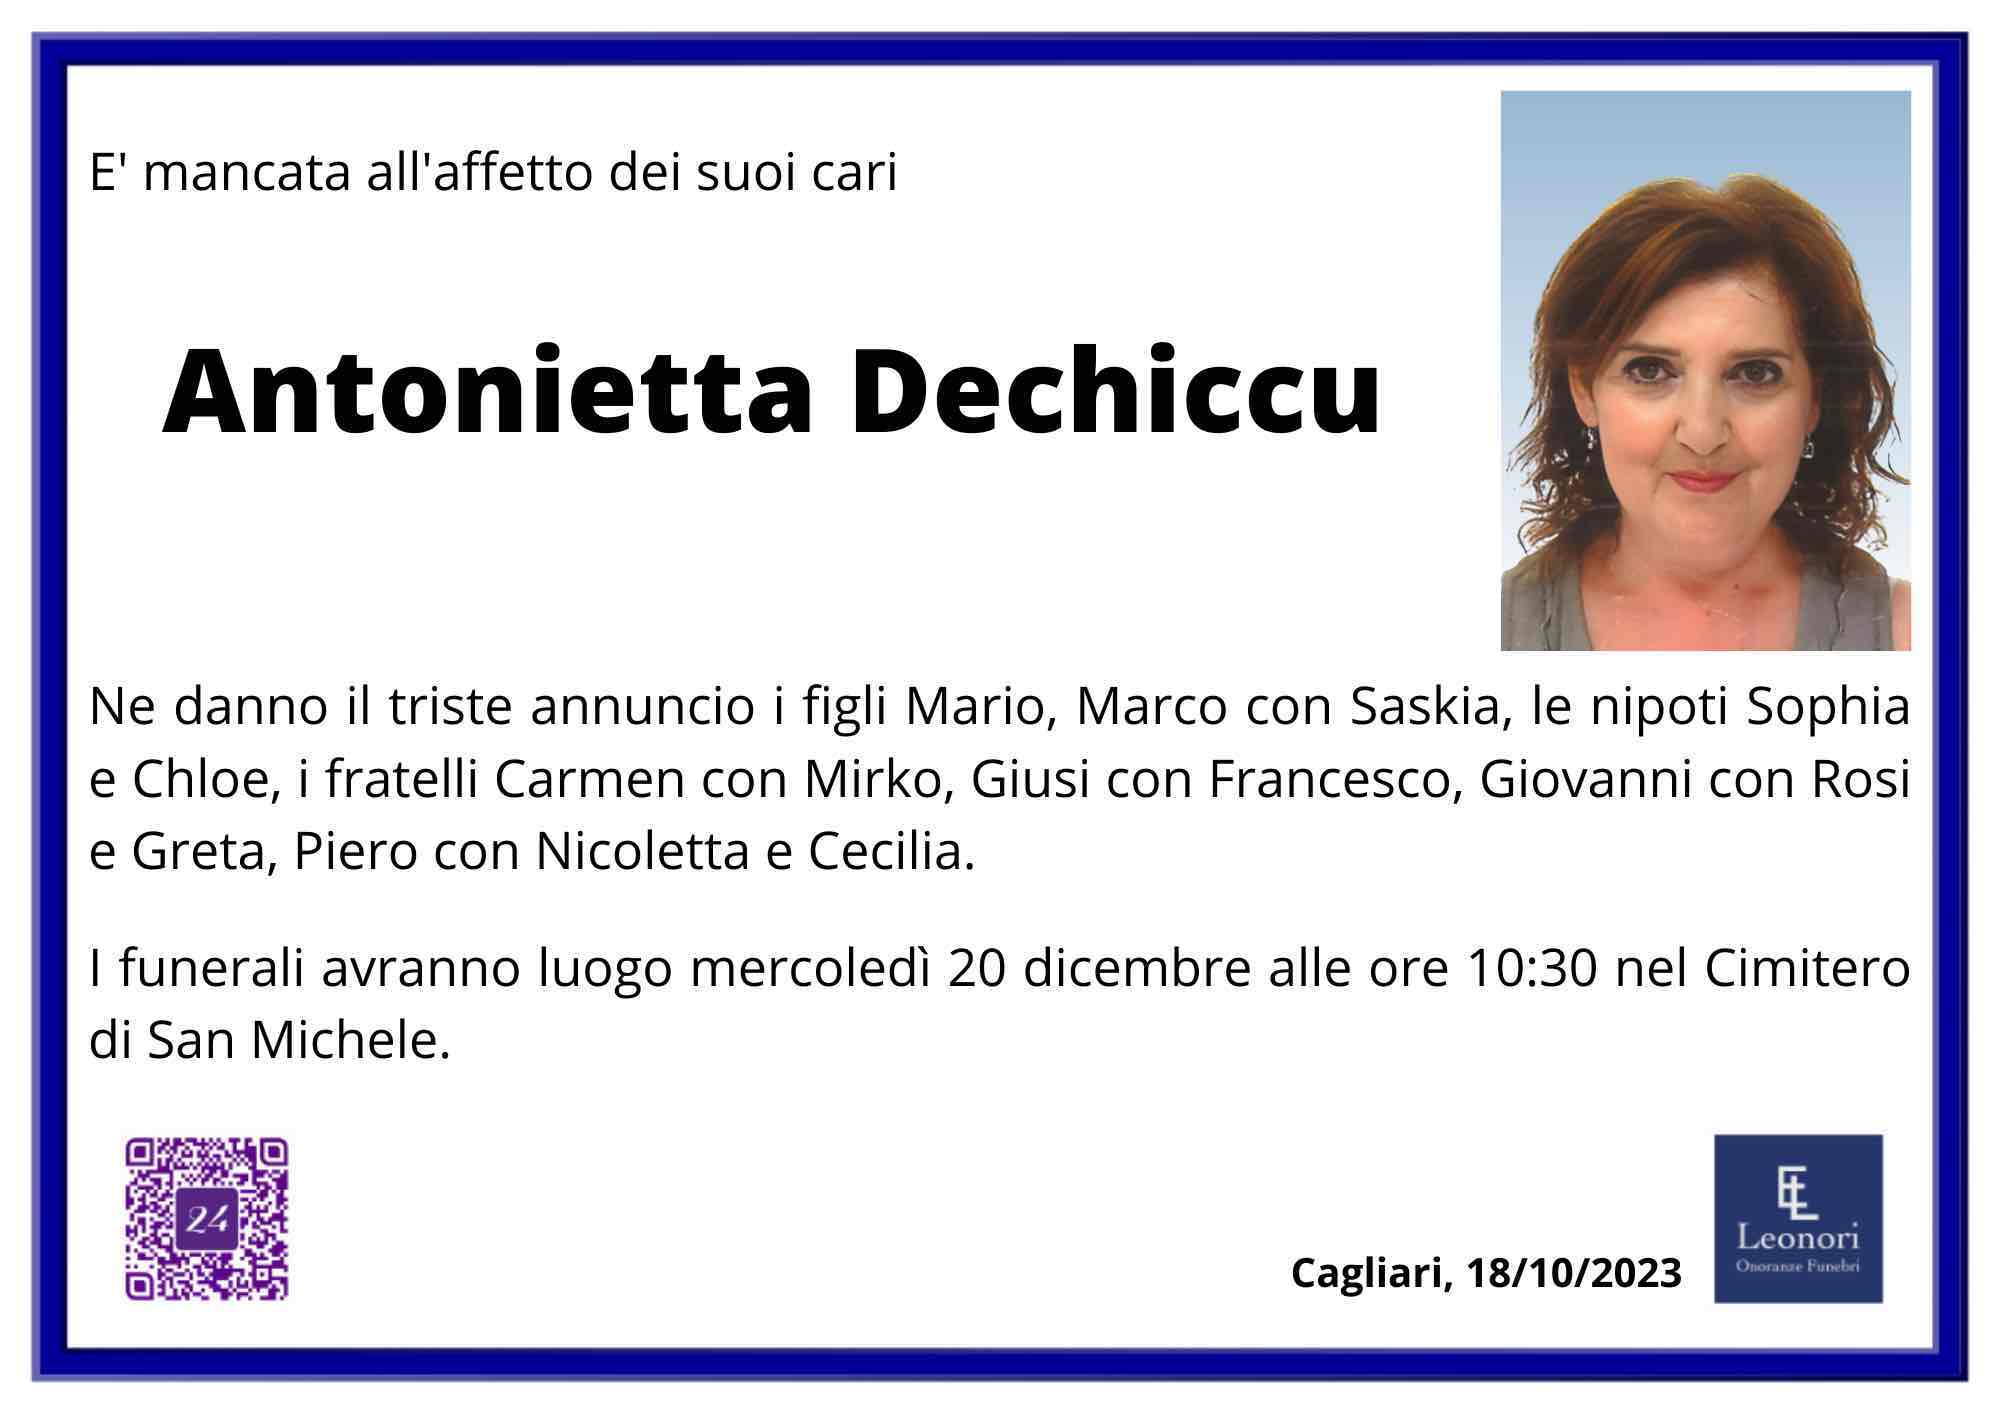 Antonietta Dechiccu